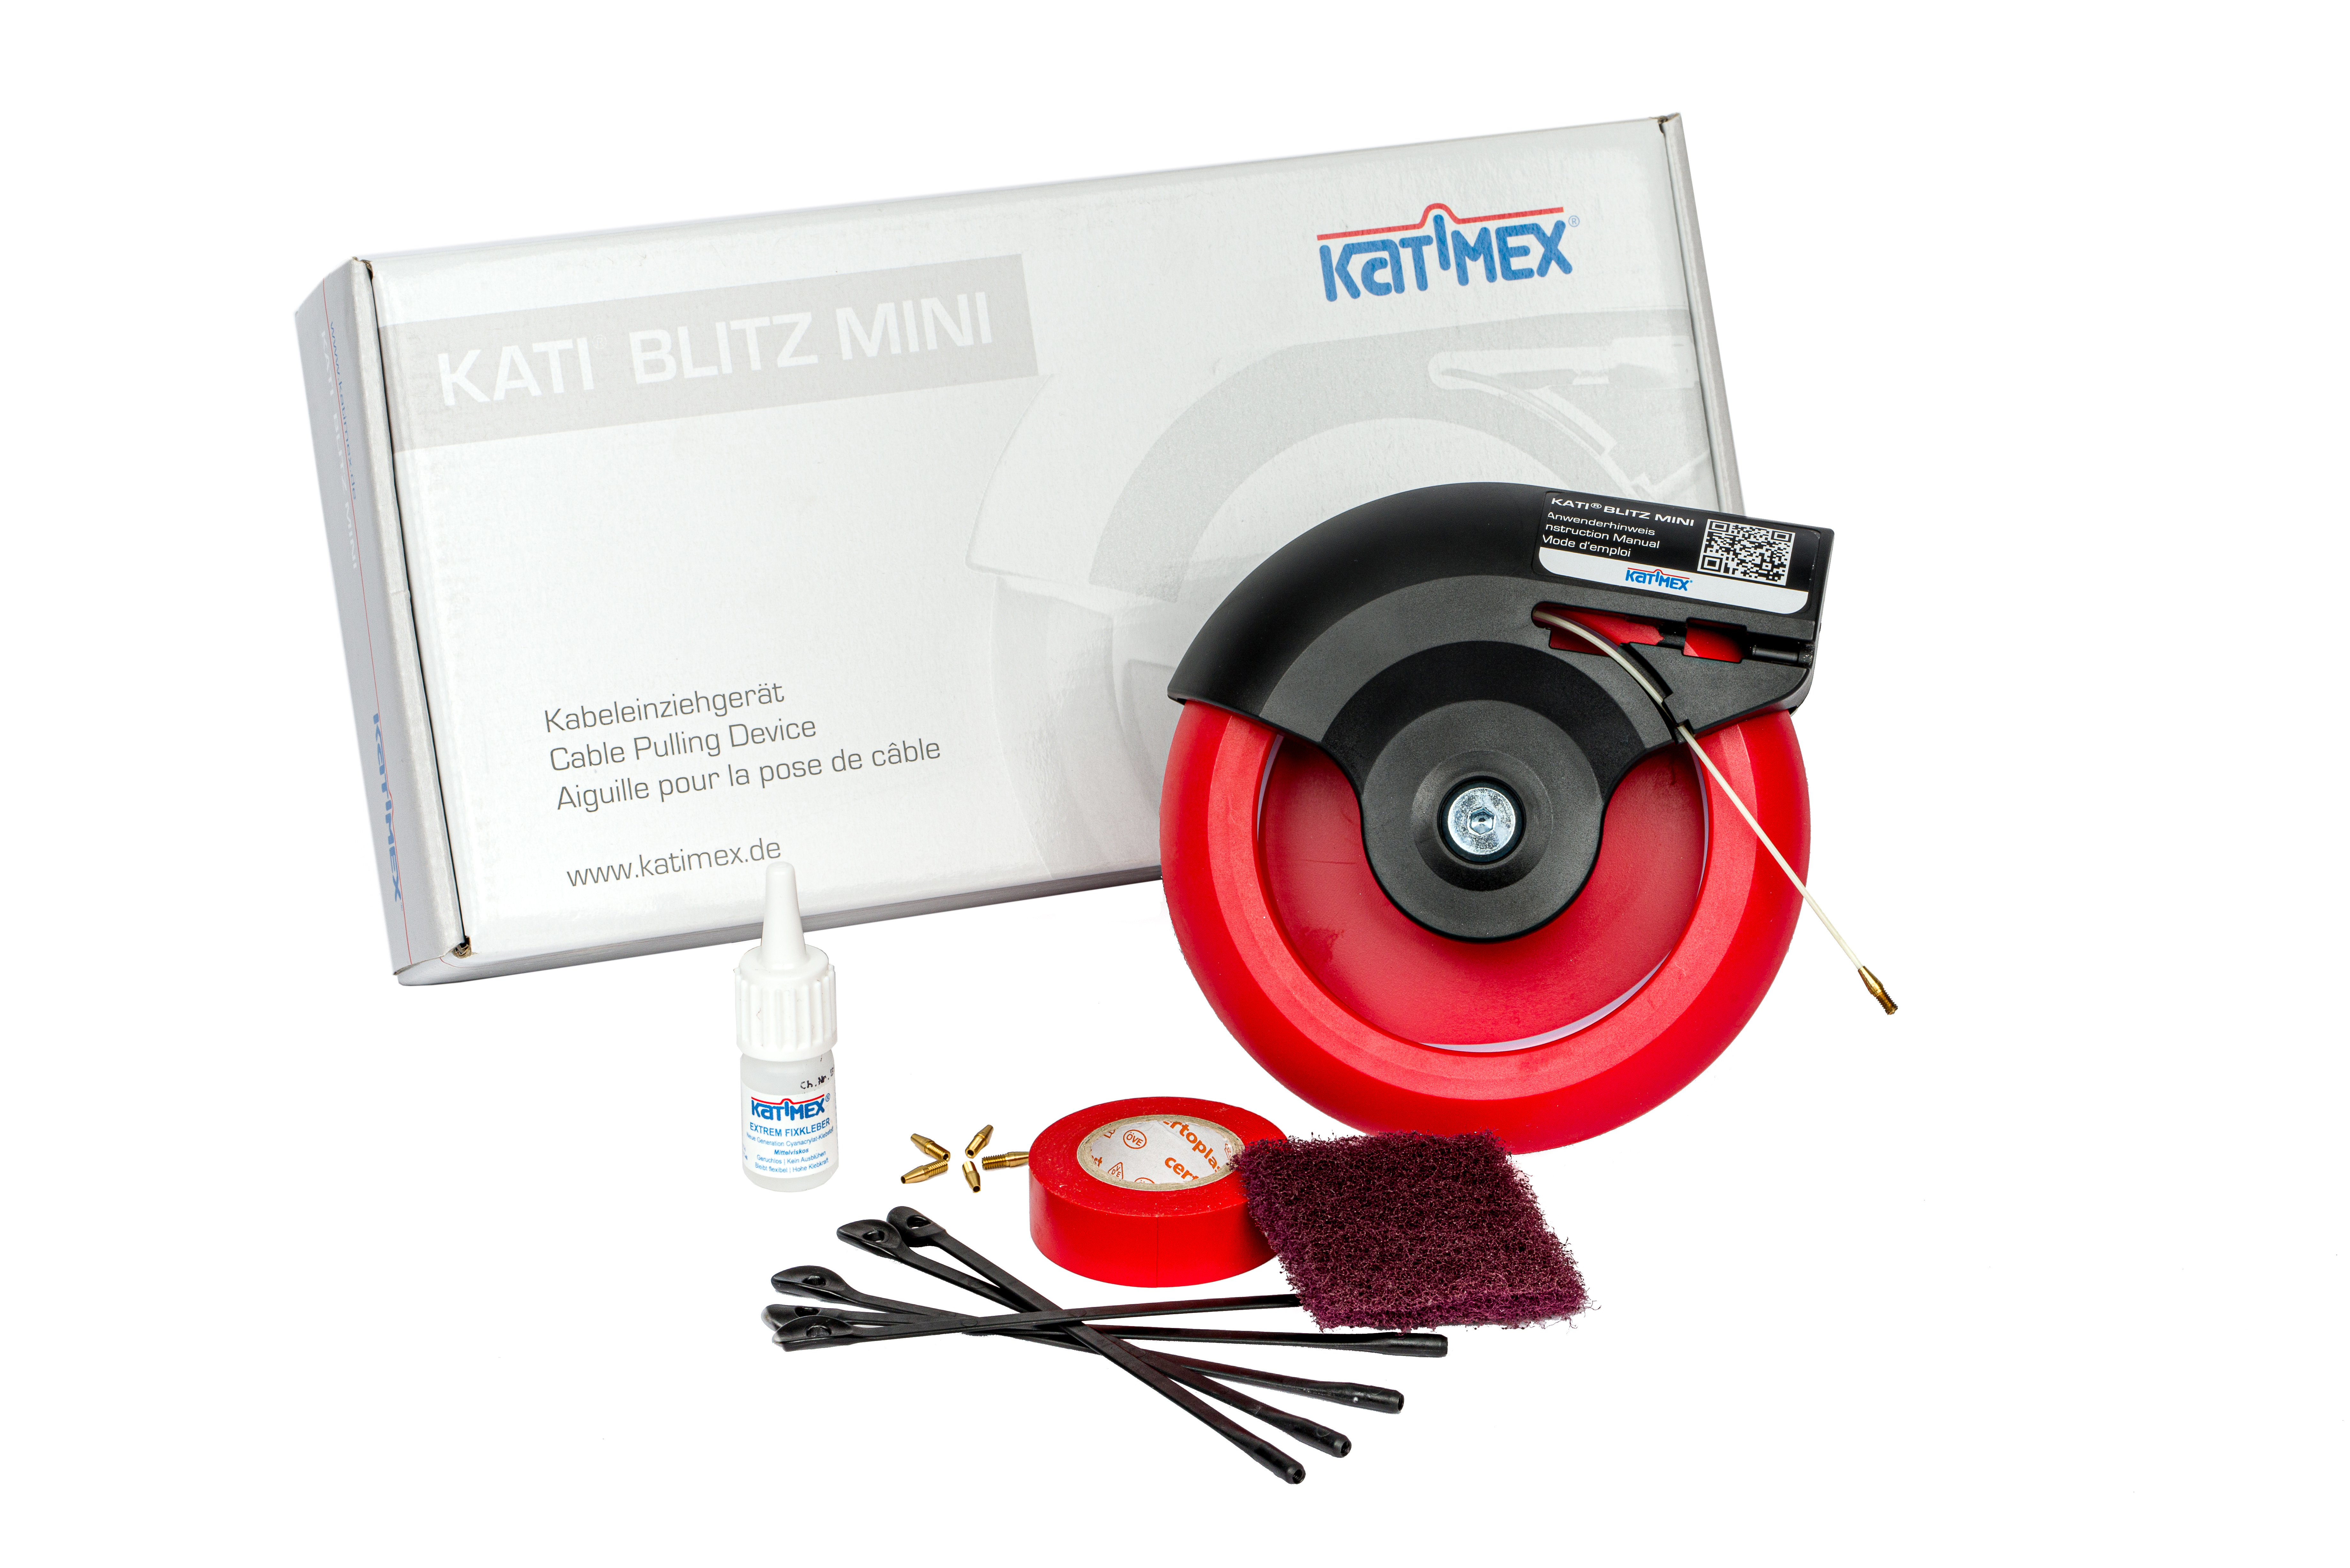 kati-blitz-mini-with-accessories